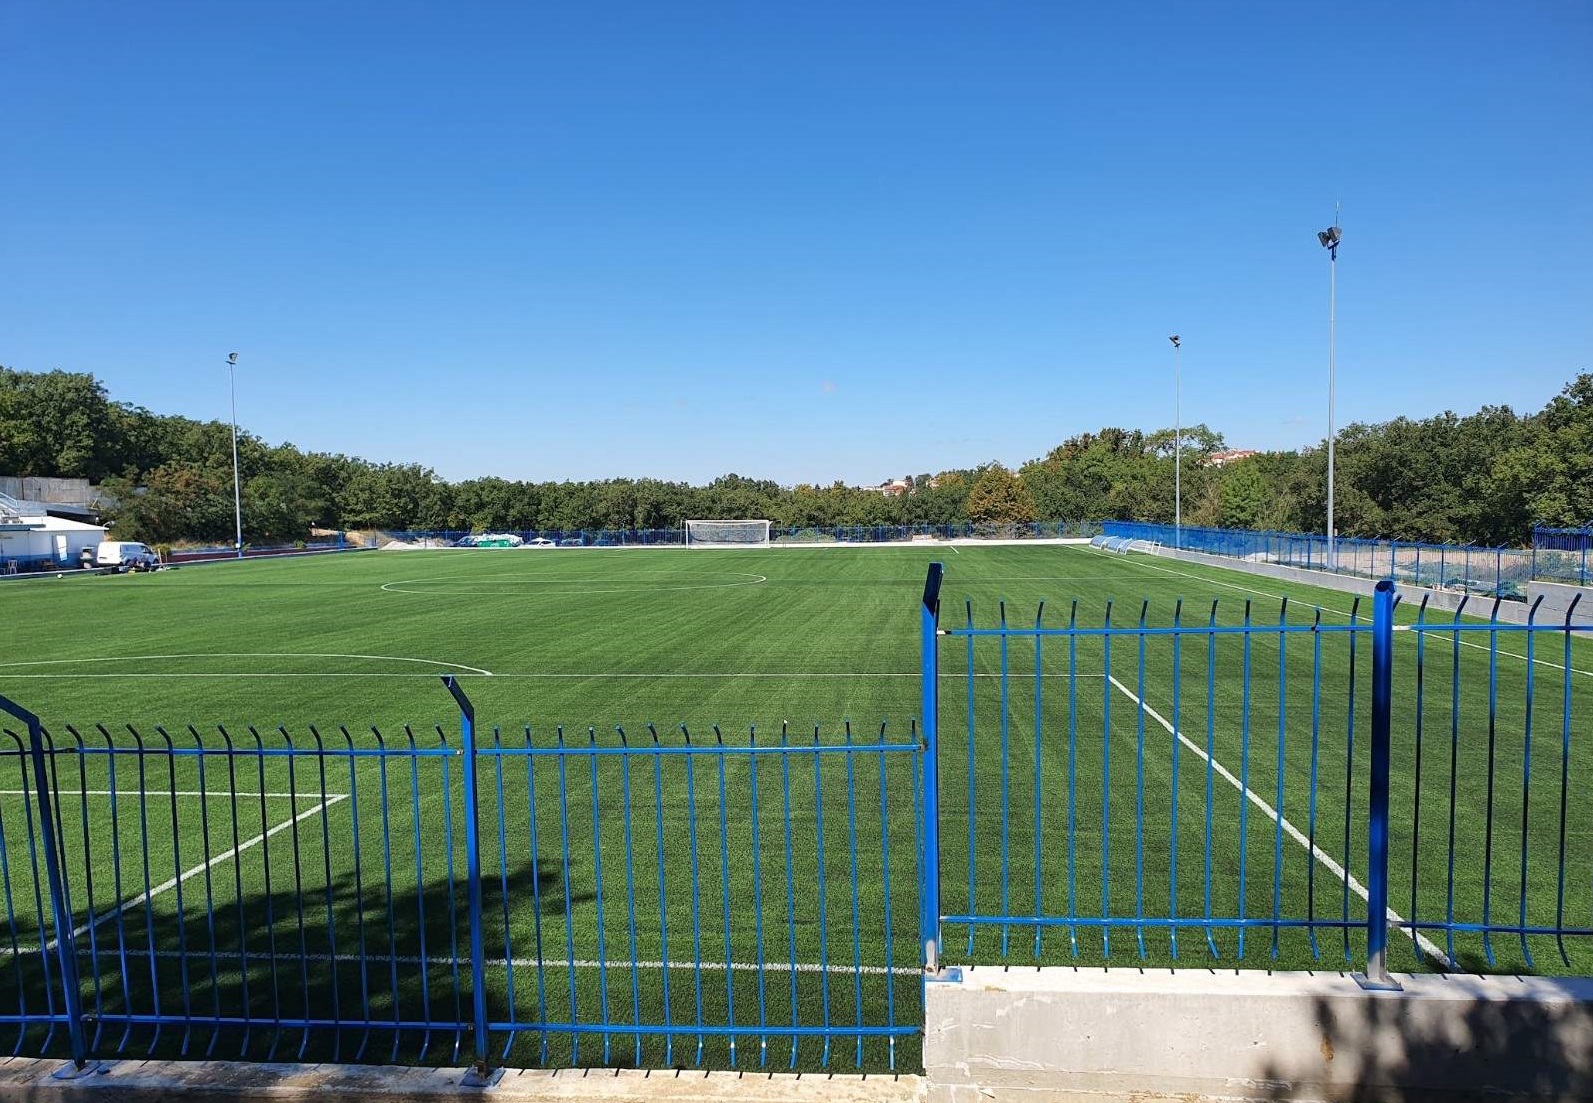 Έτοιμο το νέο γήπεδο ποδοσφαίρου στο Δήμο Πυλαίας - Χορτιάτη